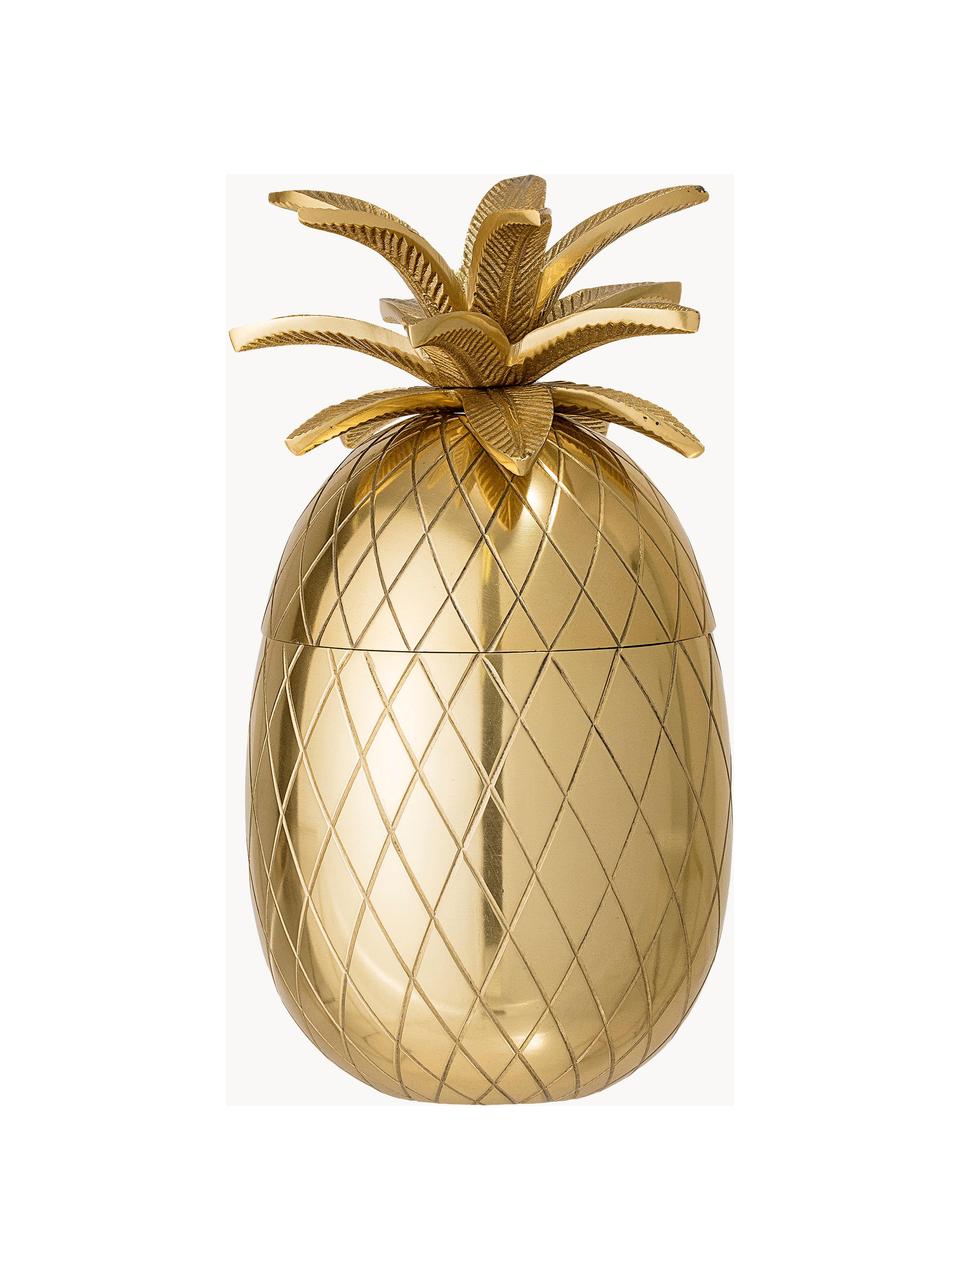 Kleiner Eiseimer Pineapple, Aluminium, vergoldet, Messingfarben, Ø 13 x H 24 cm